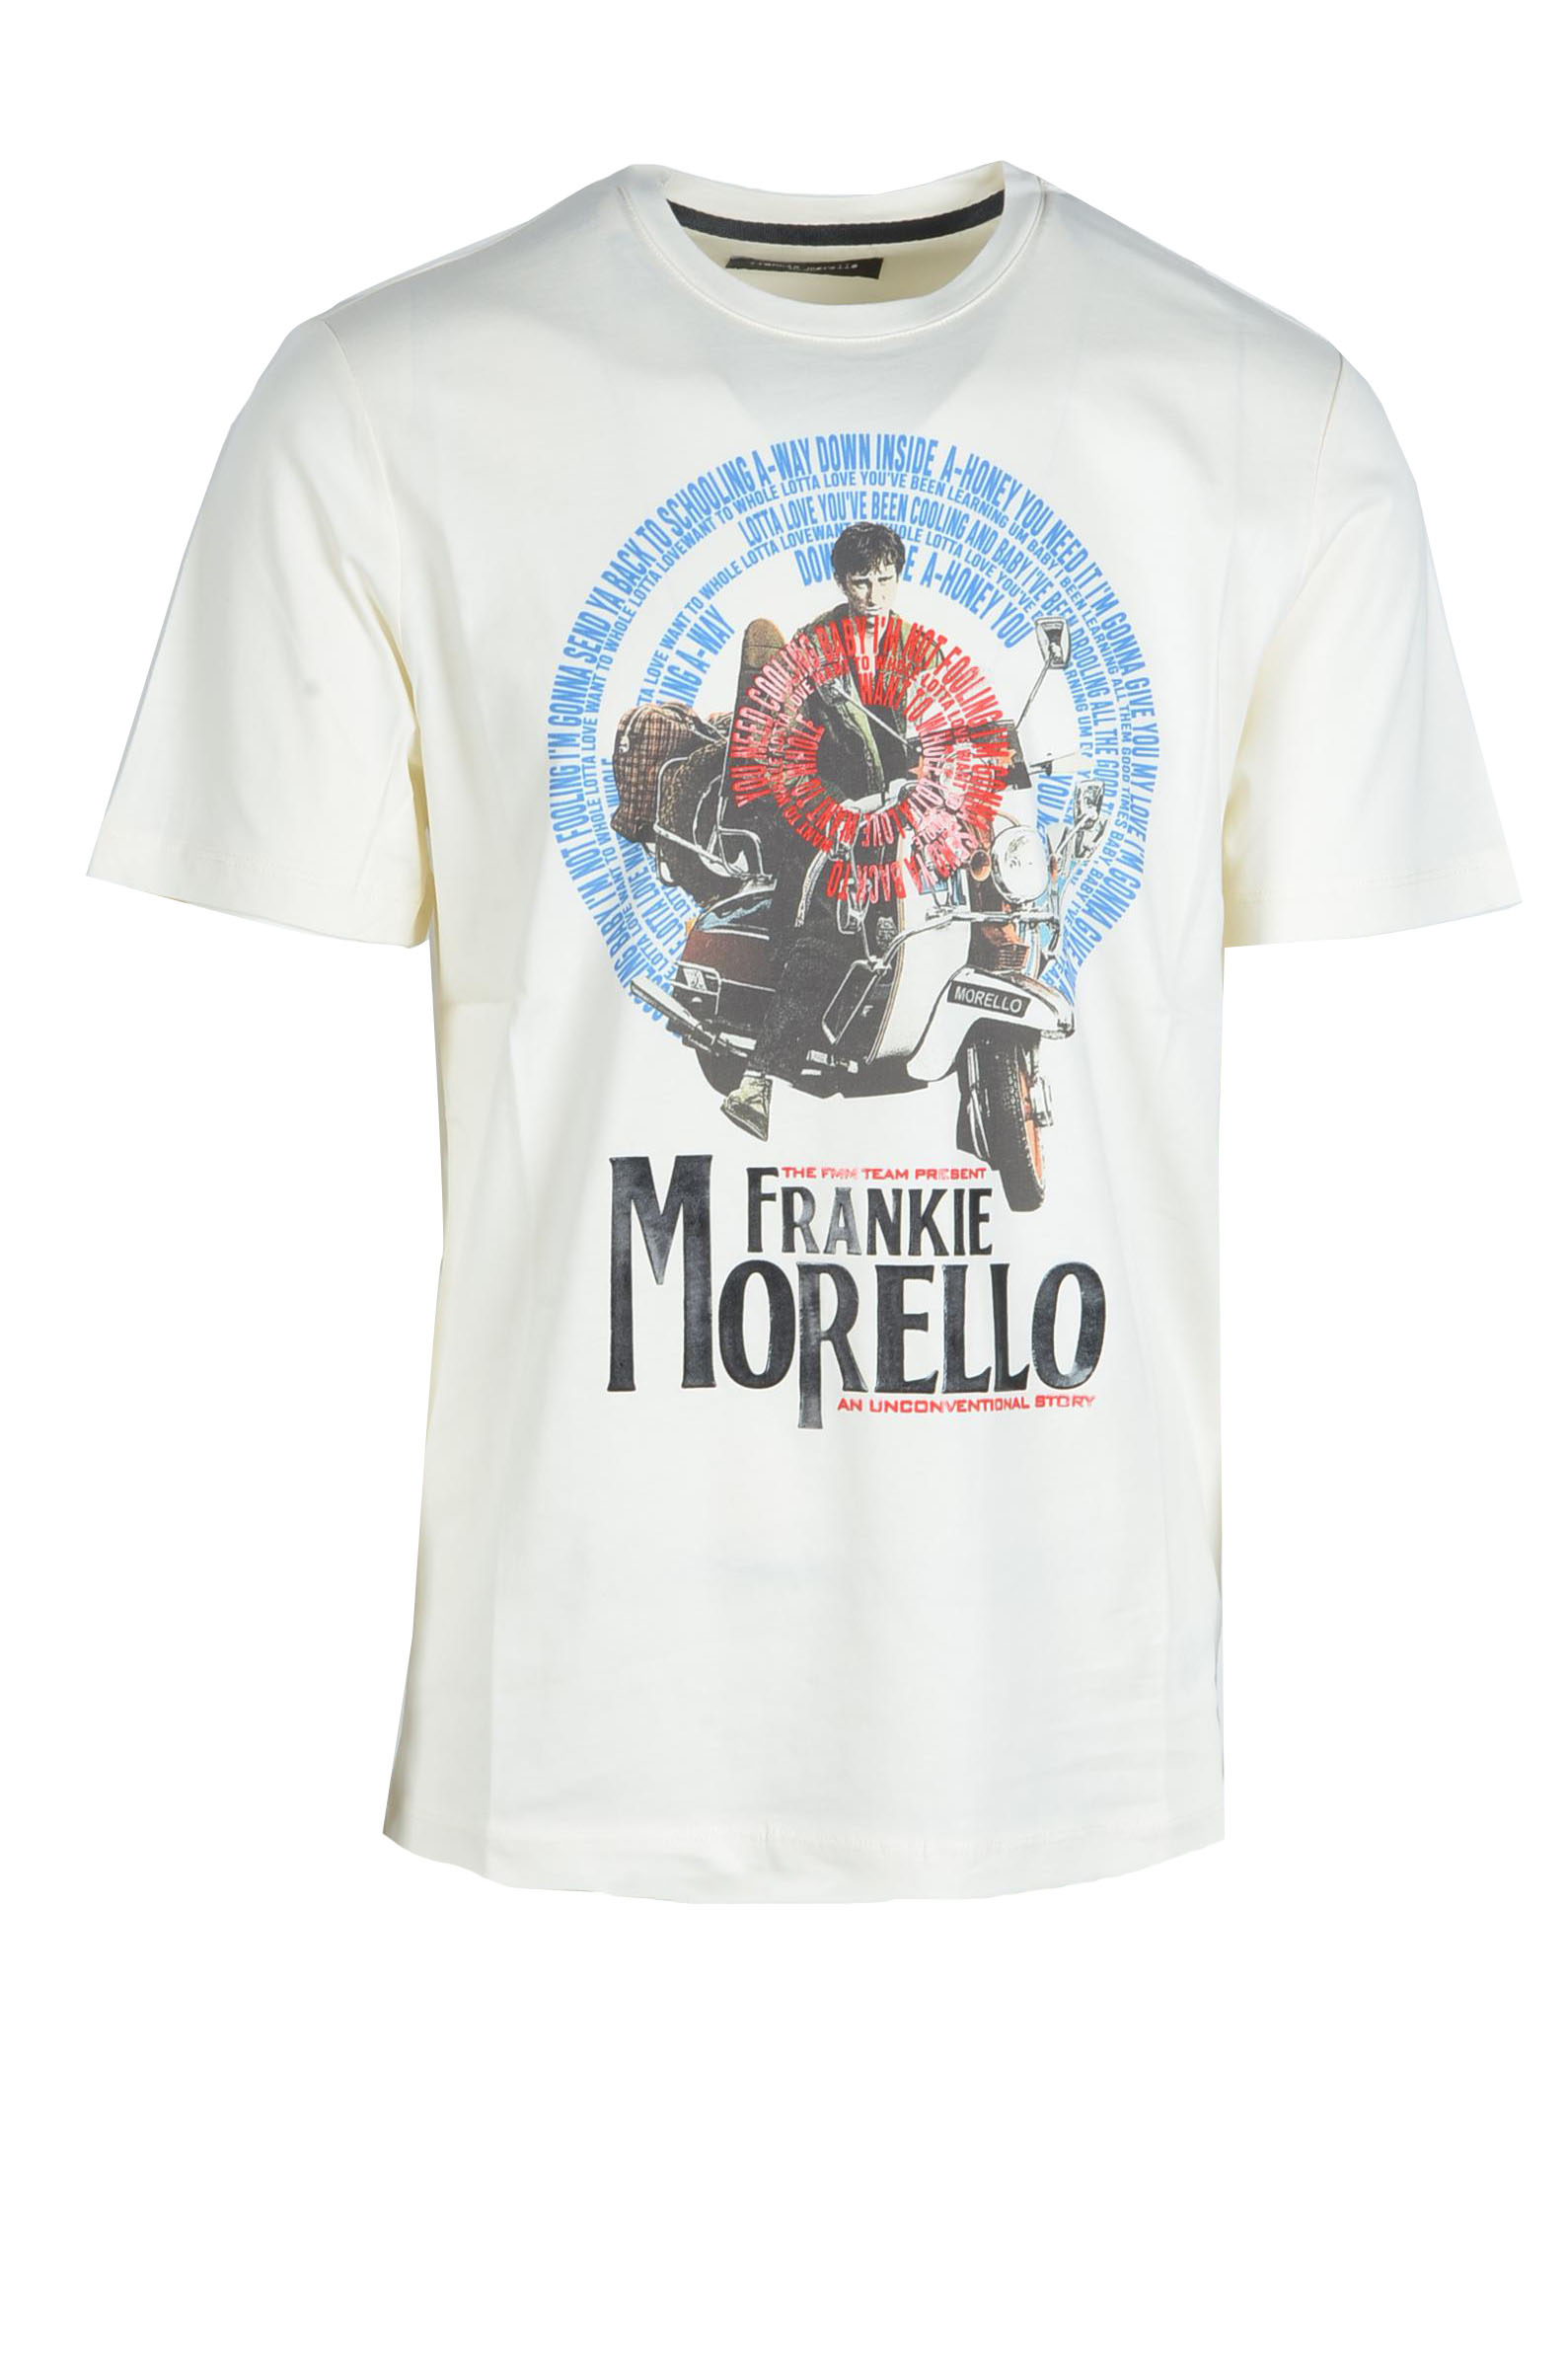 FRANKIE MORELLO_ 프린트 티셔츠